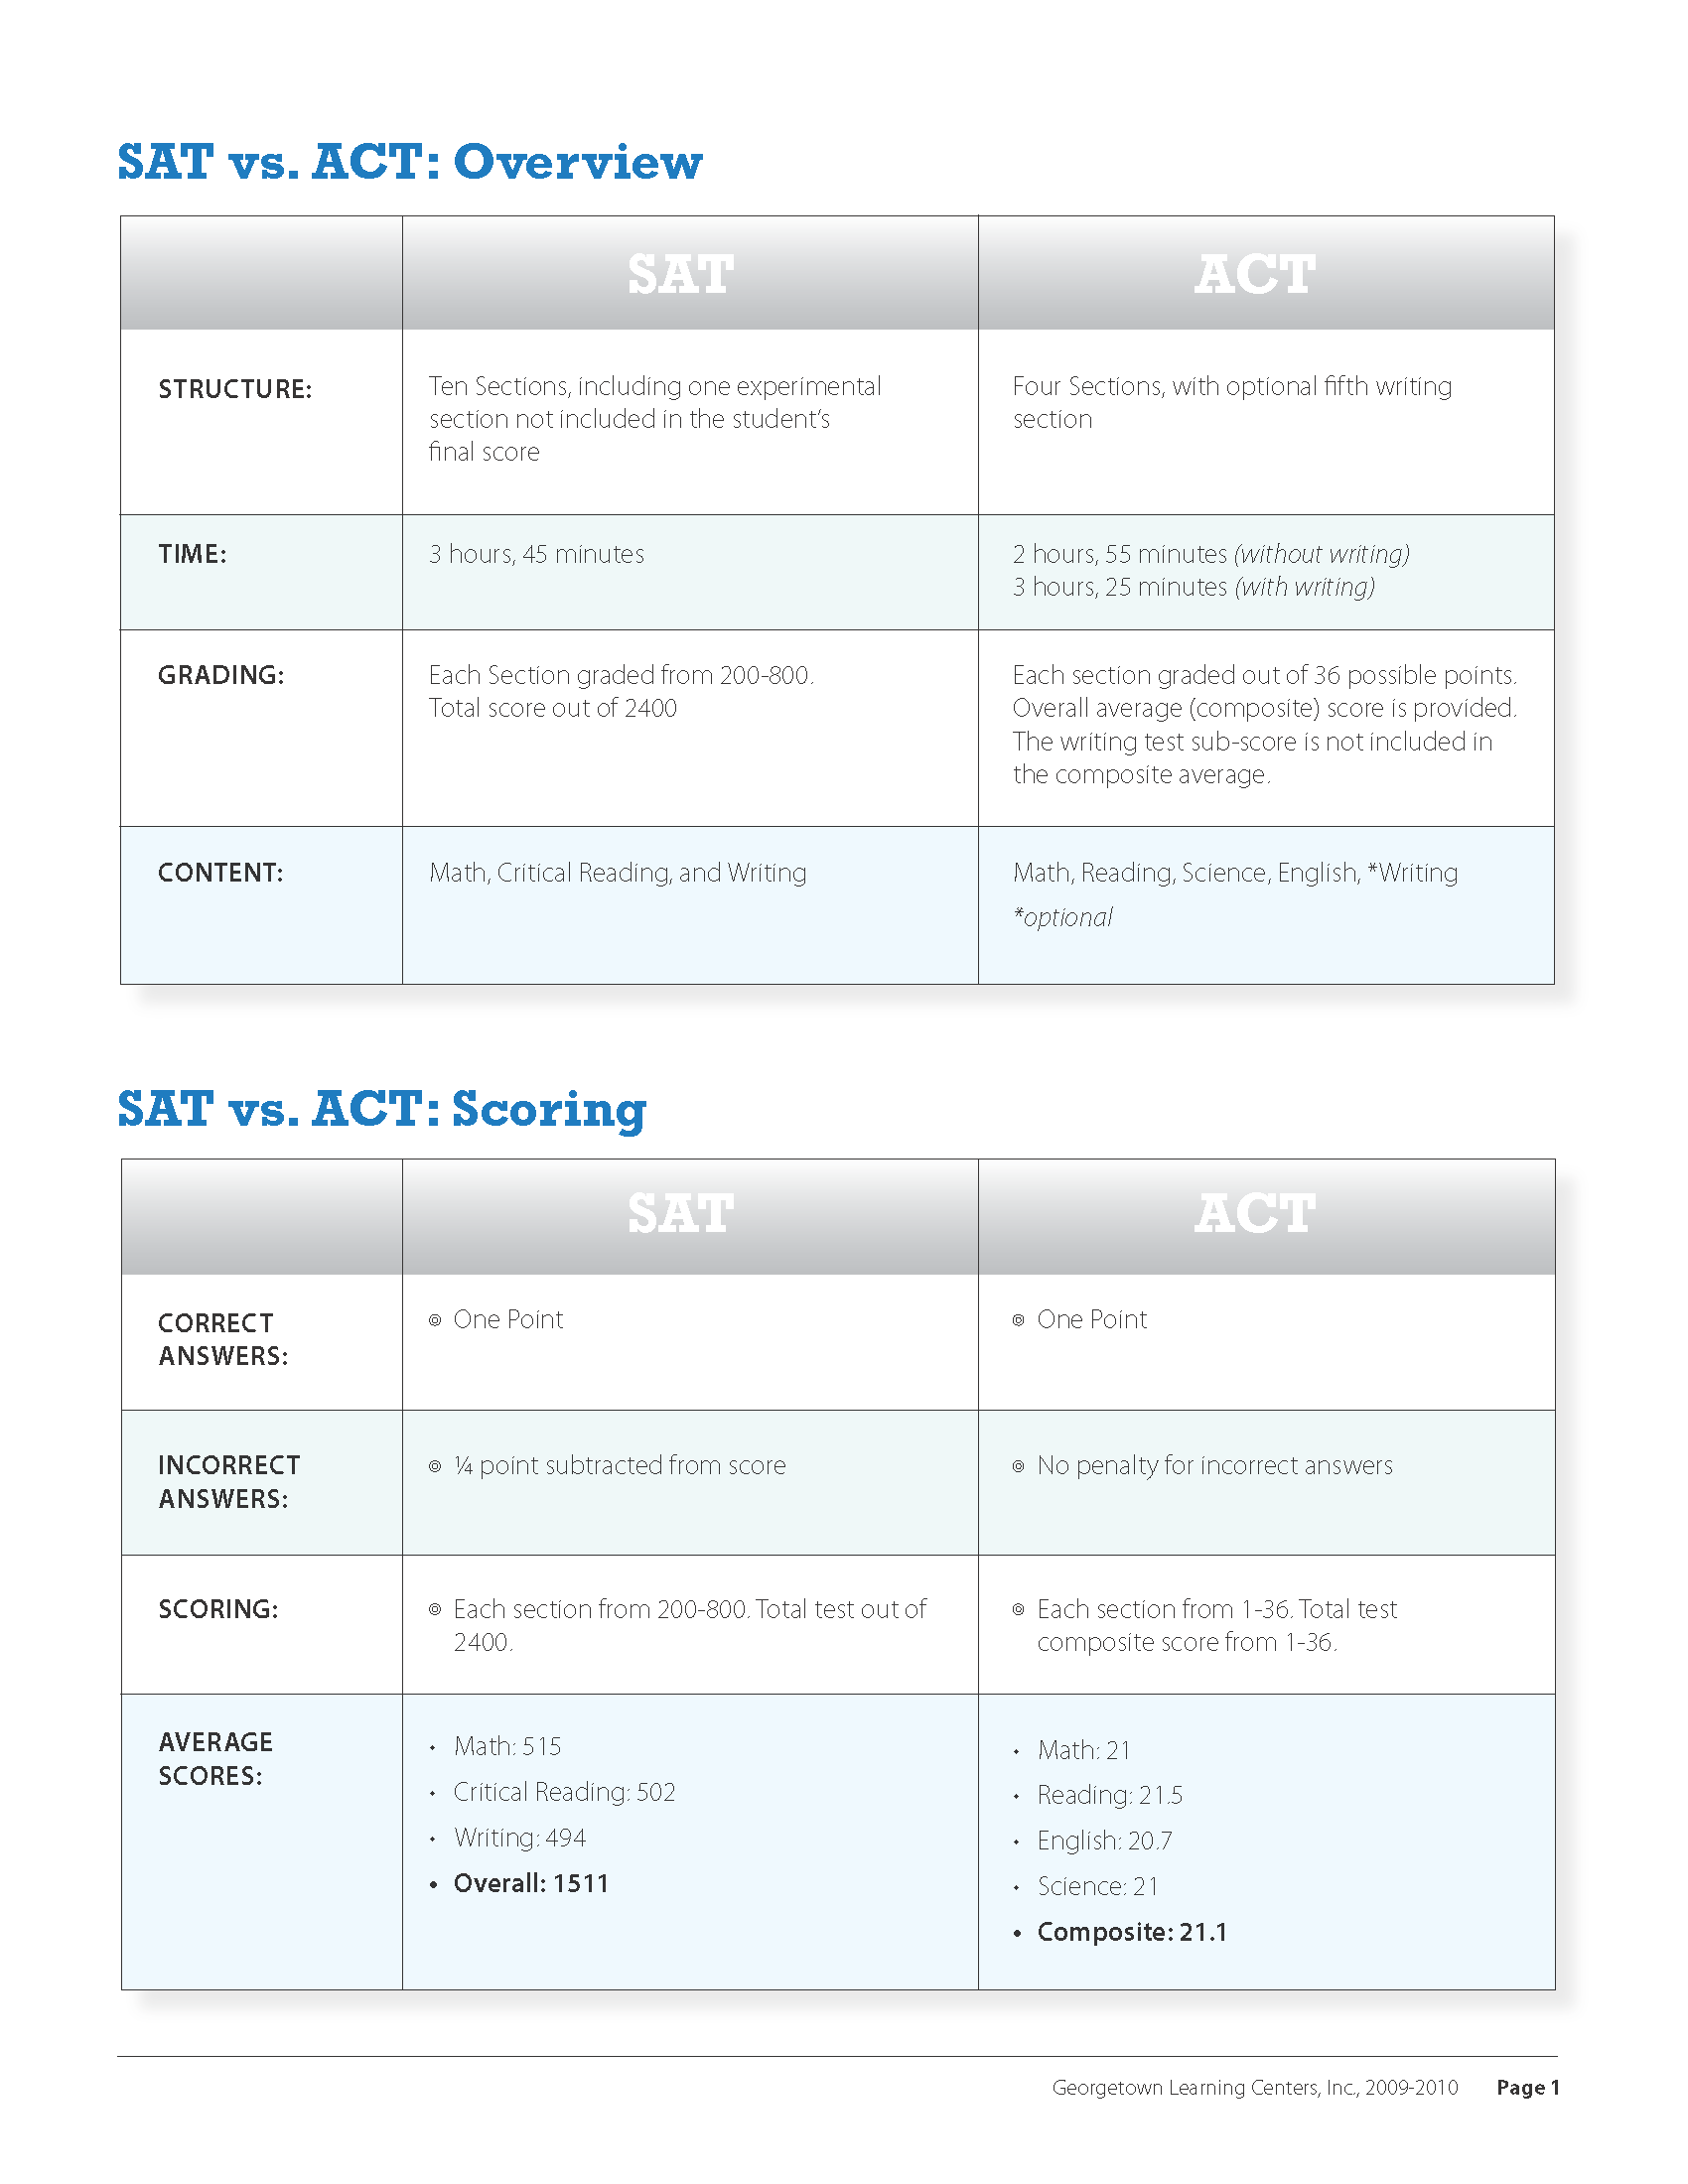 SAT v. ACT Comparison Chart_Page_1